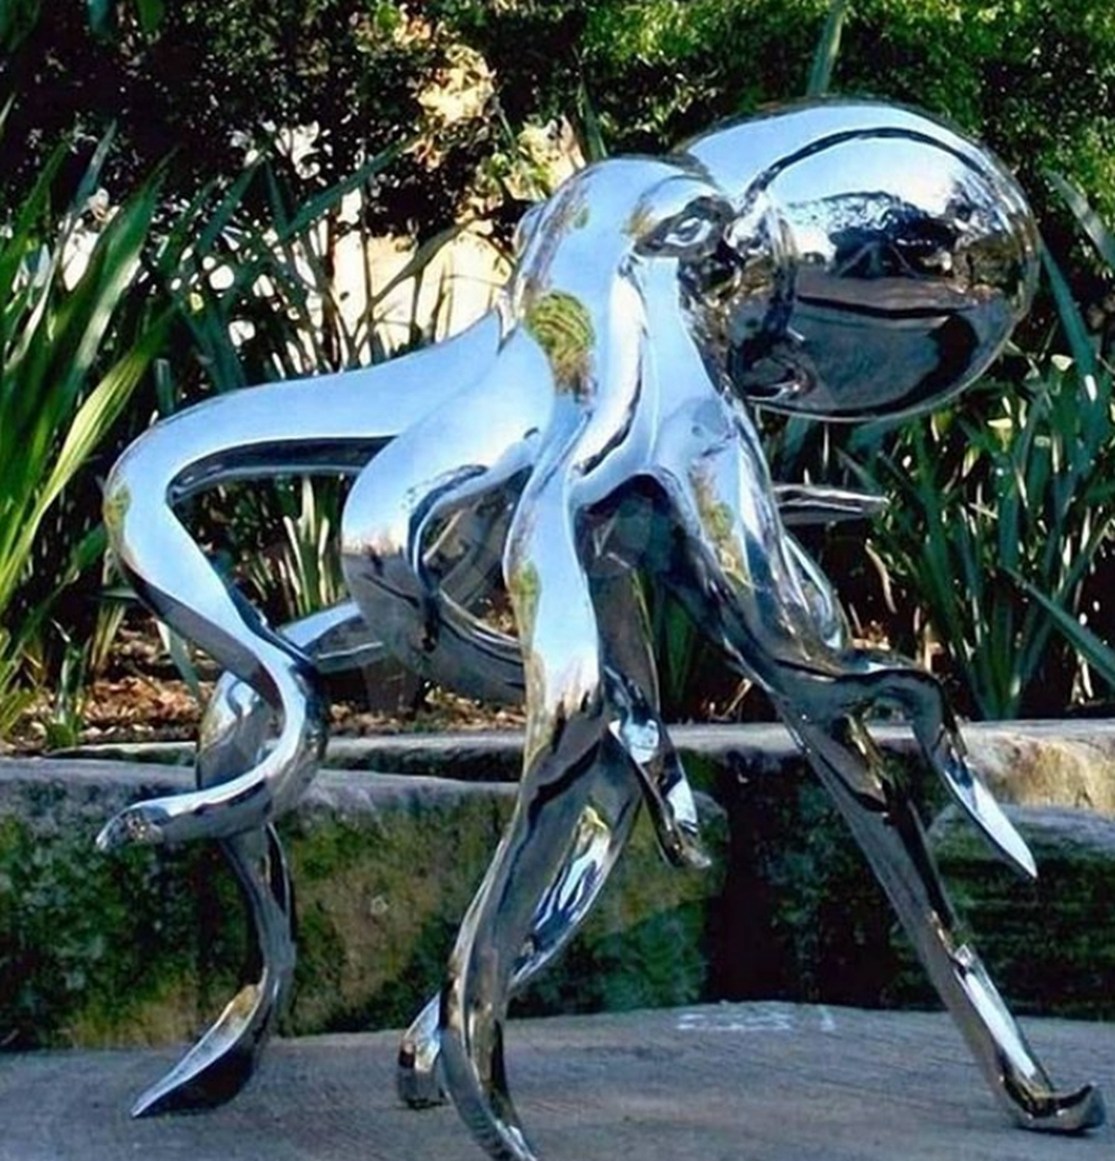 Mirrored aquatic sculptures urban art stainless steel face sculpture 1